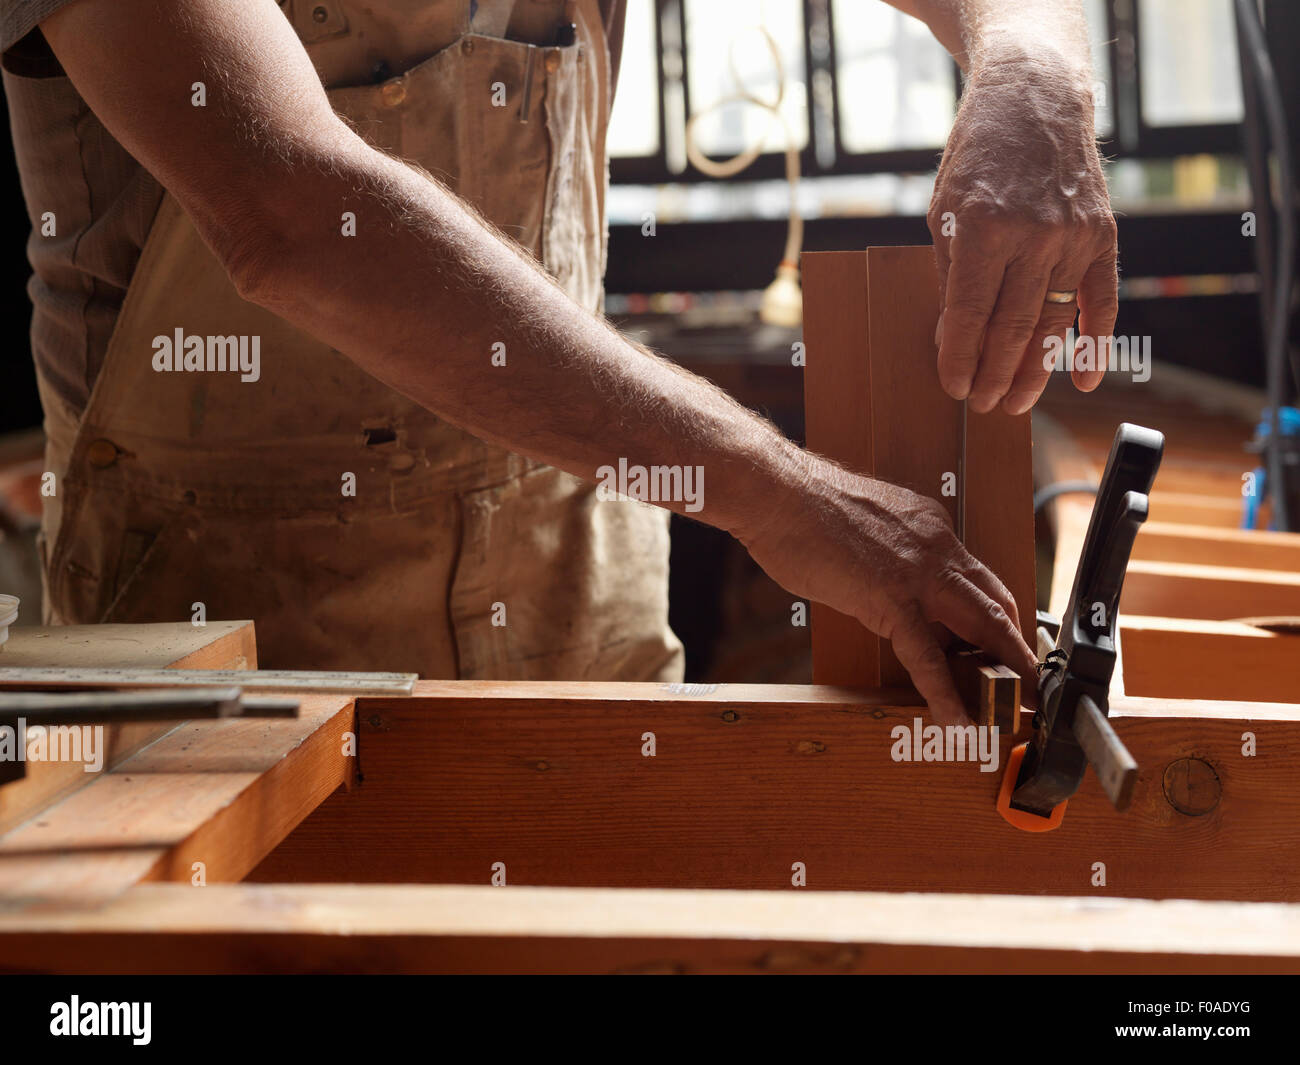 Boat builder in workshop Stock Photo